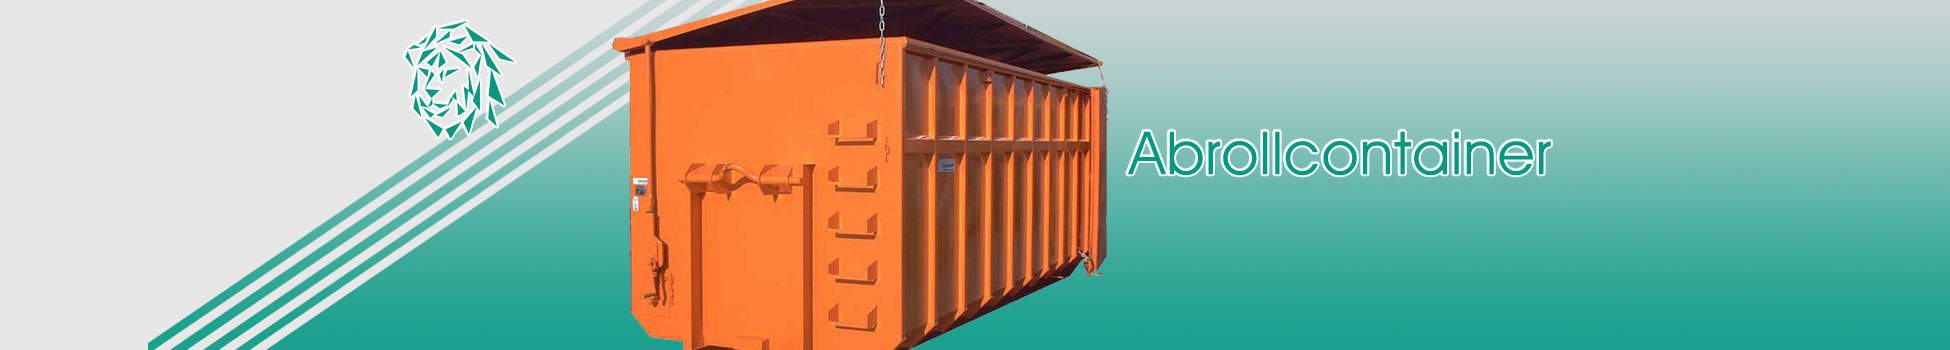 Abrollcontainer mit Deckel nach DIN 30722